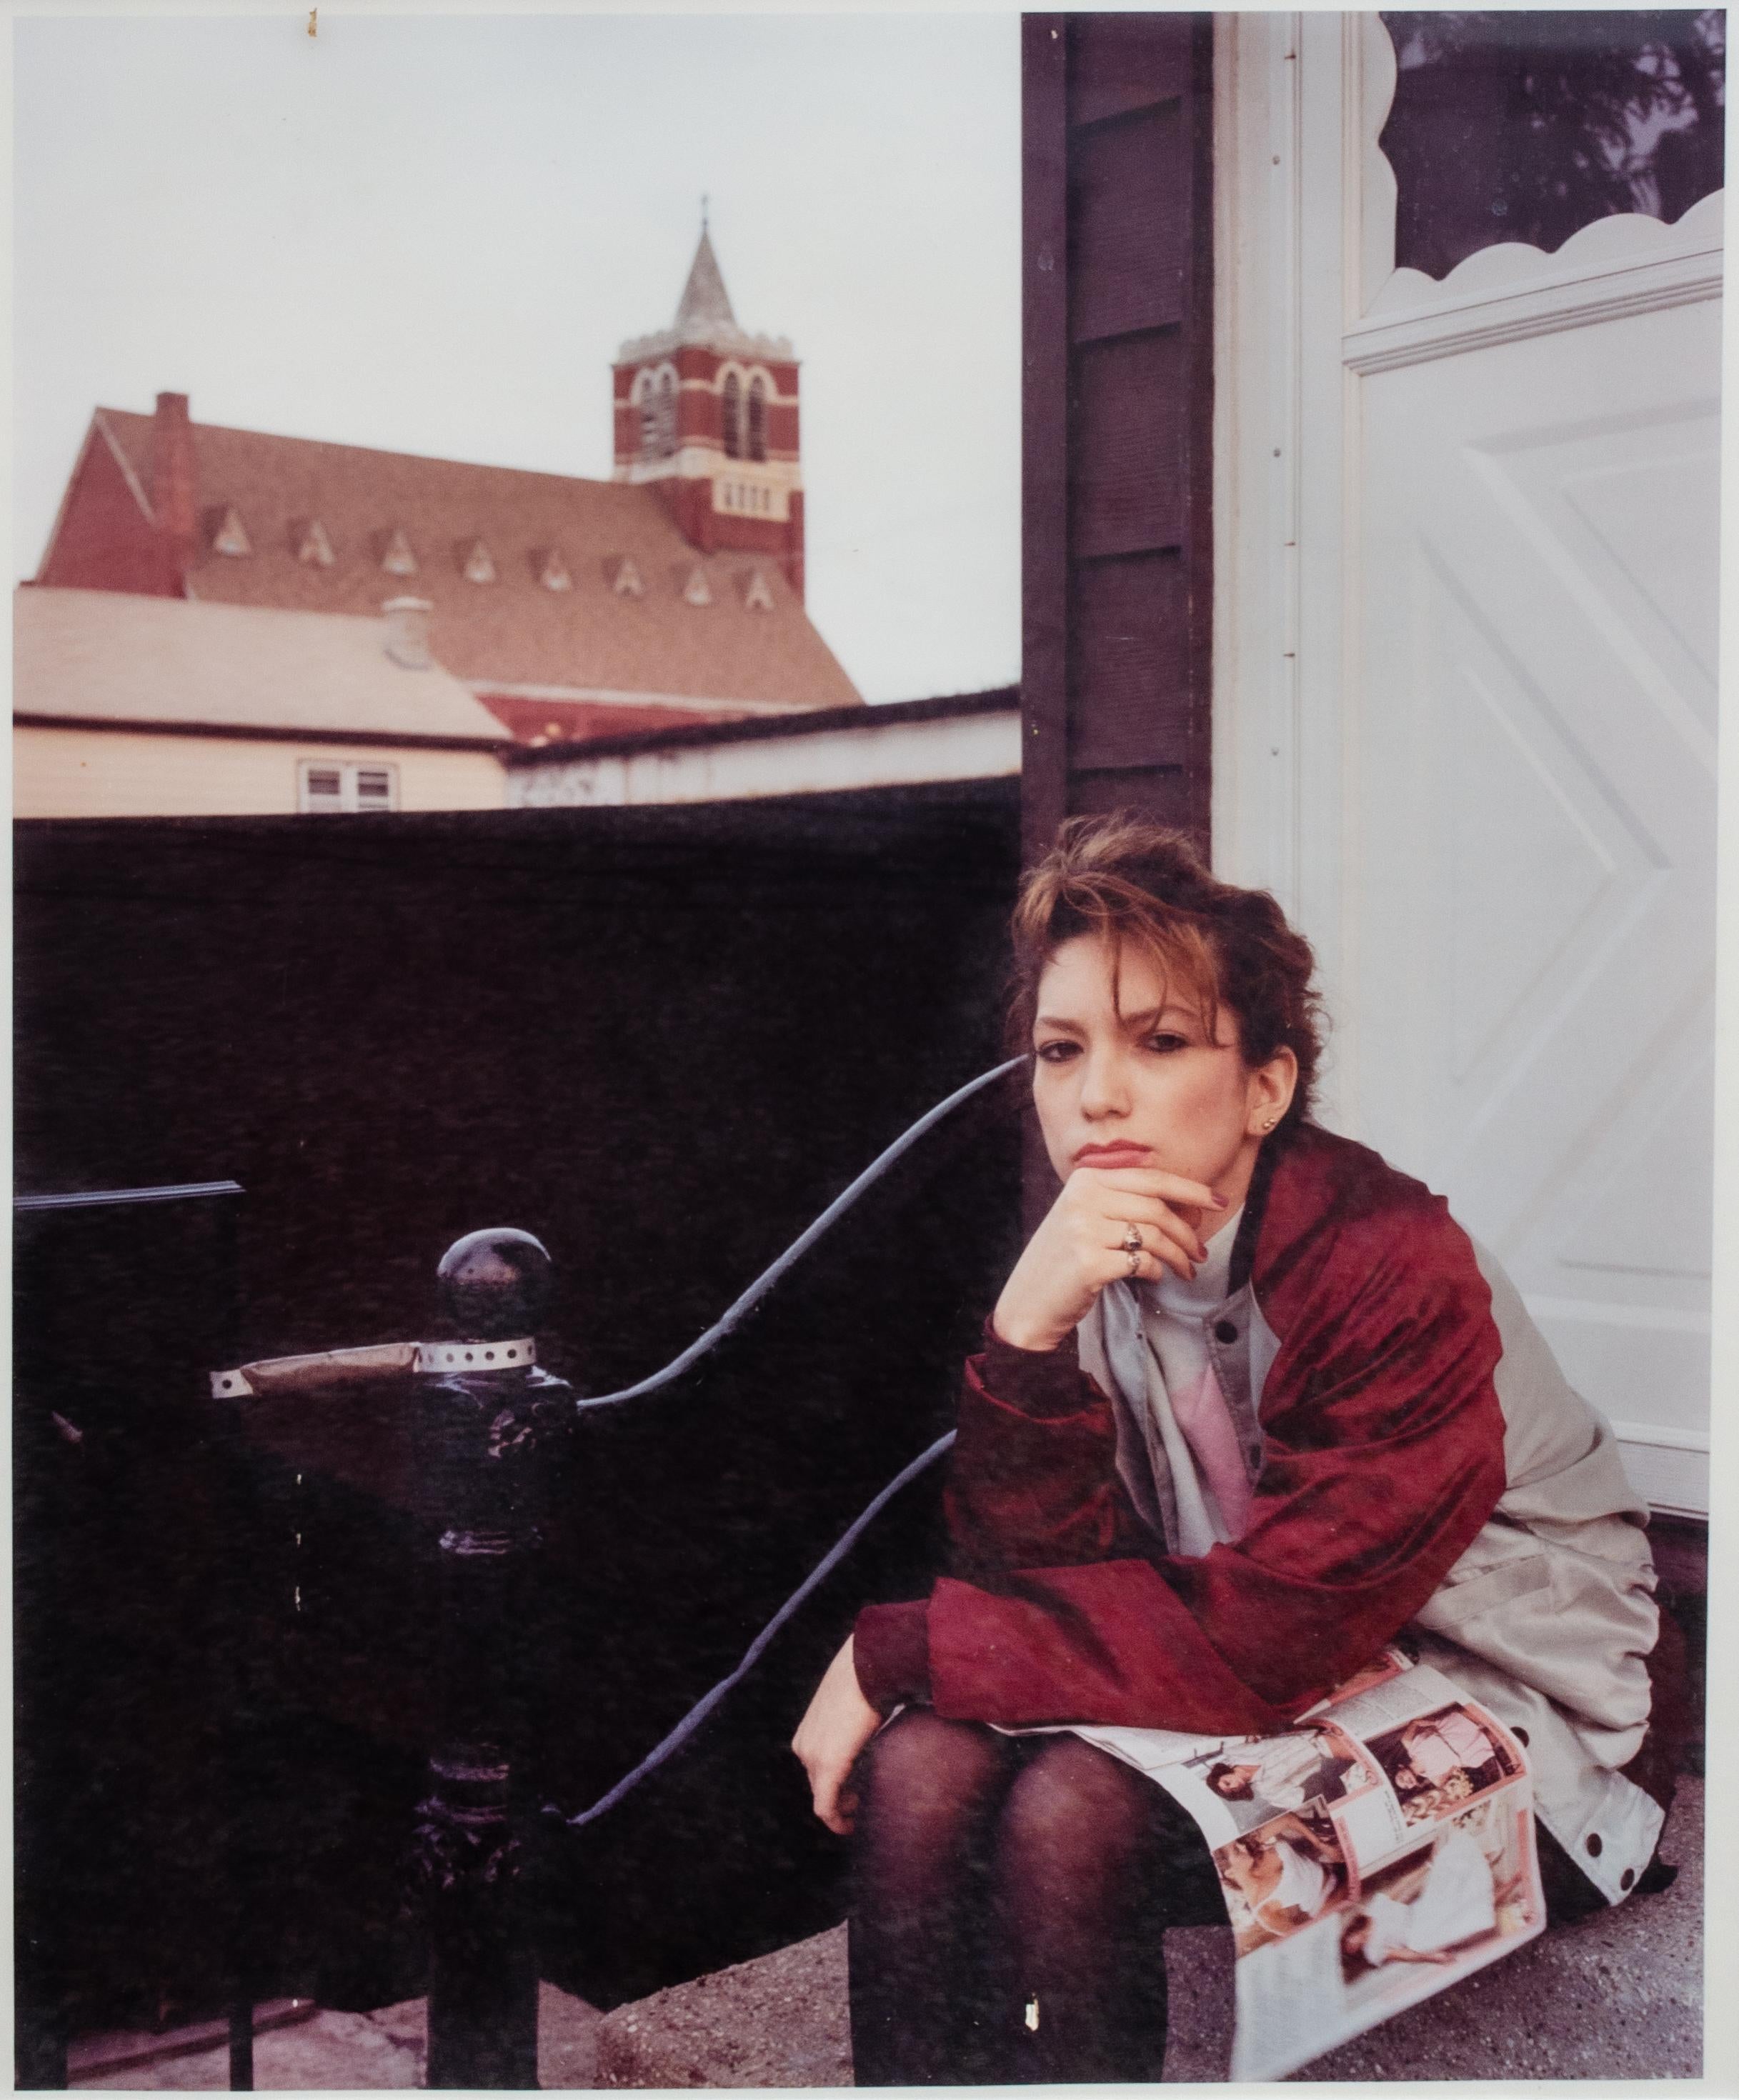 Paul D'Amato (Amerikaner, geb. 1956)
Mädchen mit Dessous Katalog, 1988
Farbfotodruck
Bildformat: 18 1/4 x 15 Zoll.
Gerahmt: 28 x 25 x 1 3/8 Zoll.

Provenienz: 
Der Künstler

Paul D'Amato (1956- ) wurde in Boston geboren, wo er zur Zeit der